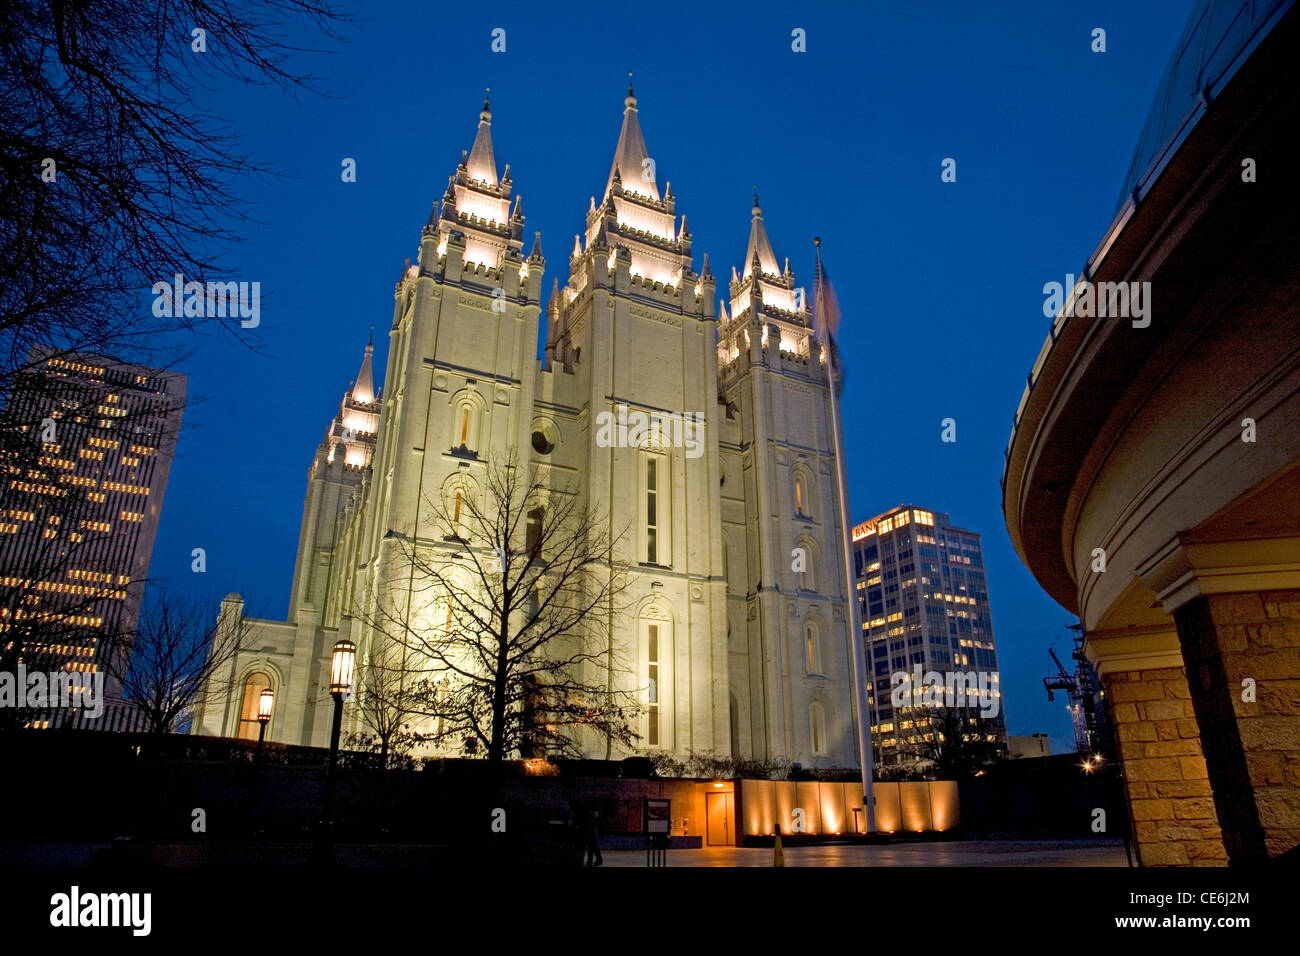 - L'UTAH Salt Lake City Temple de l'Église de Jésus-Christ des Saints des Derniers Jours, le temple mormon. Banque D'Images